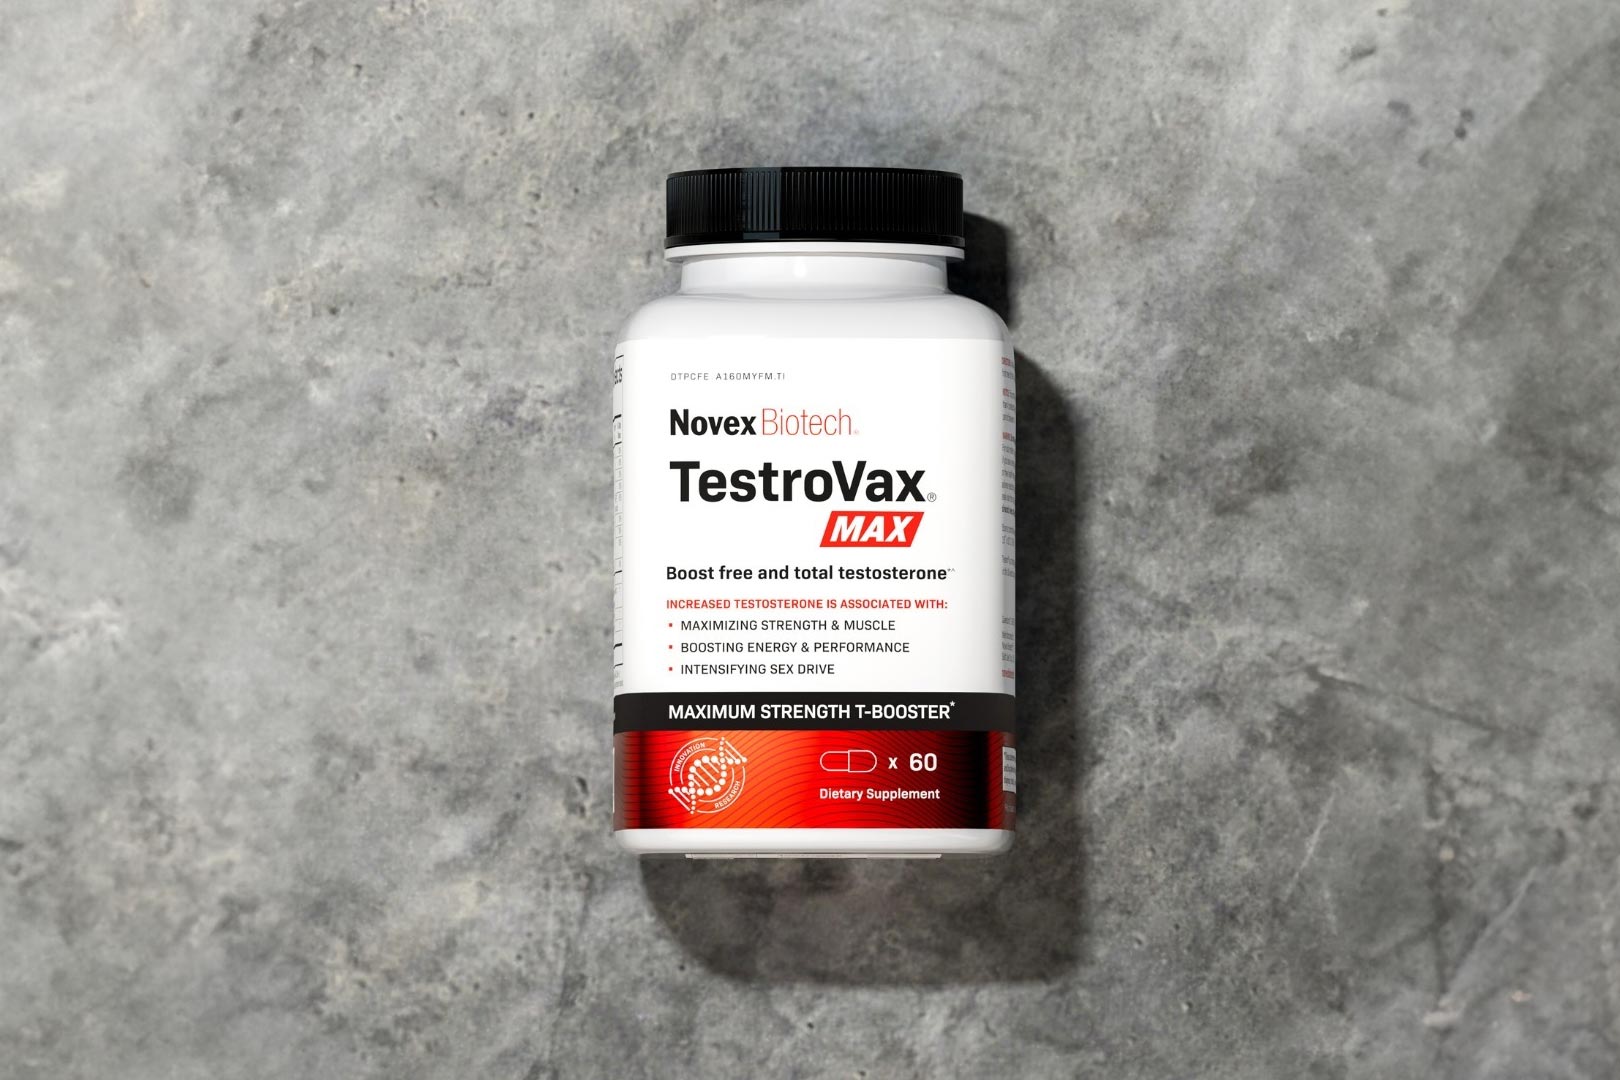 Novex Biotech Testrovax Max